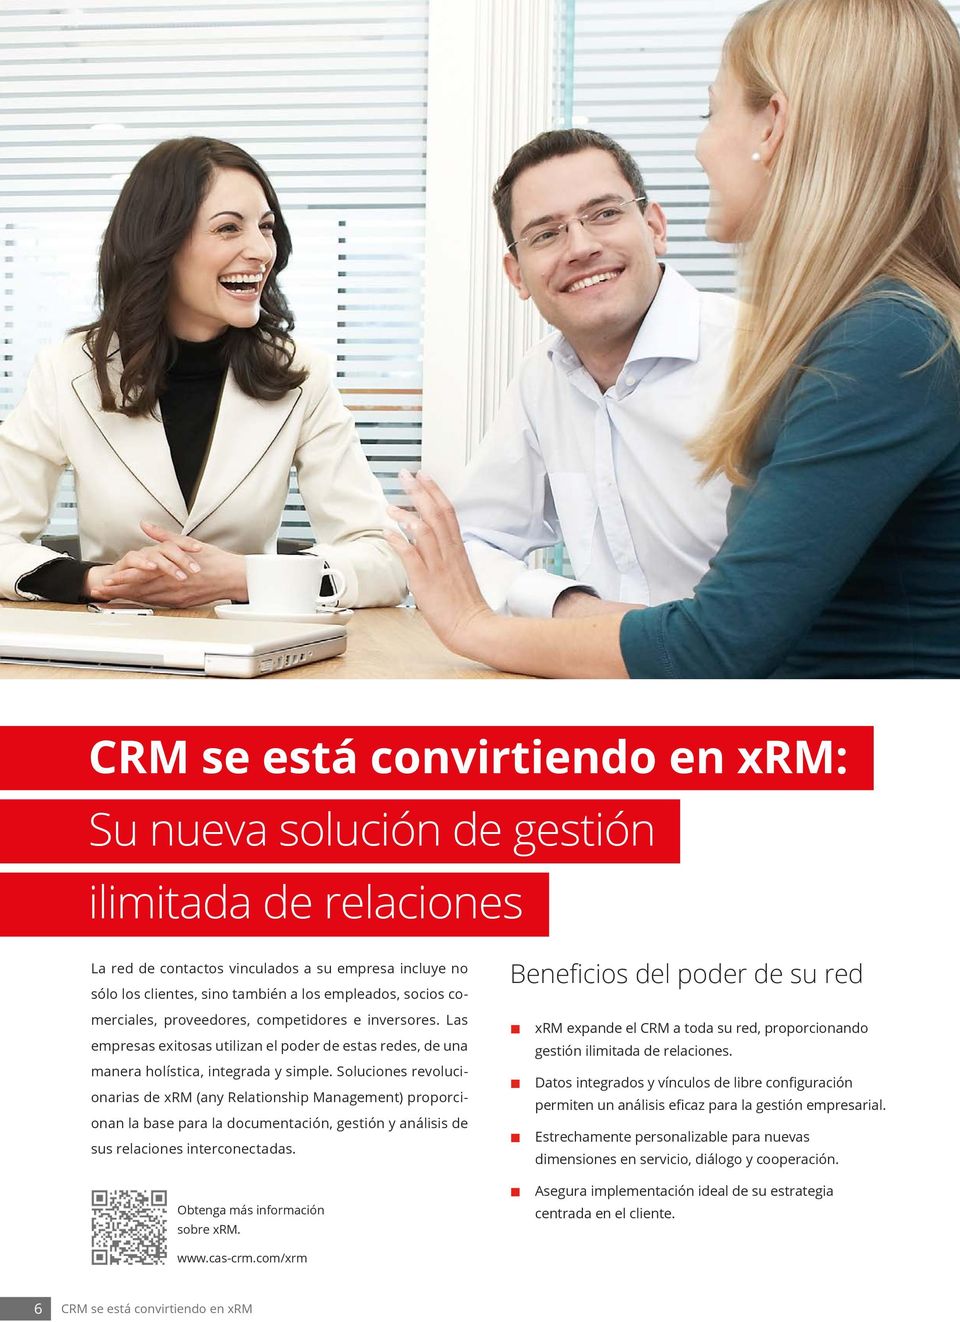 Soluciones revolucionarias de xrm (any Relationship Management) proporcionan la base para la documentación, gestión y análisis de sus relaciones interconectadas. Obtenga más información sobre xrm.